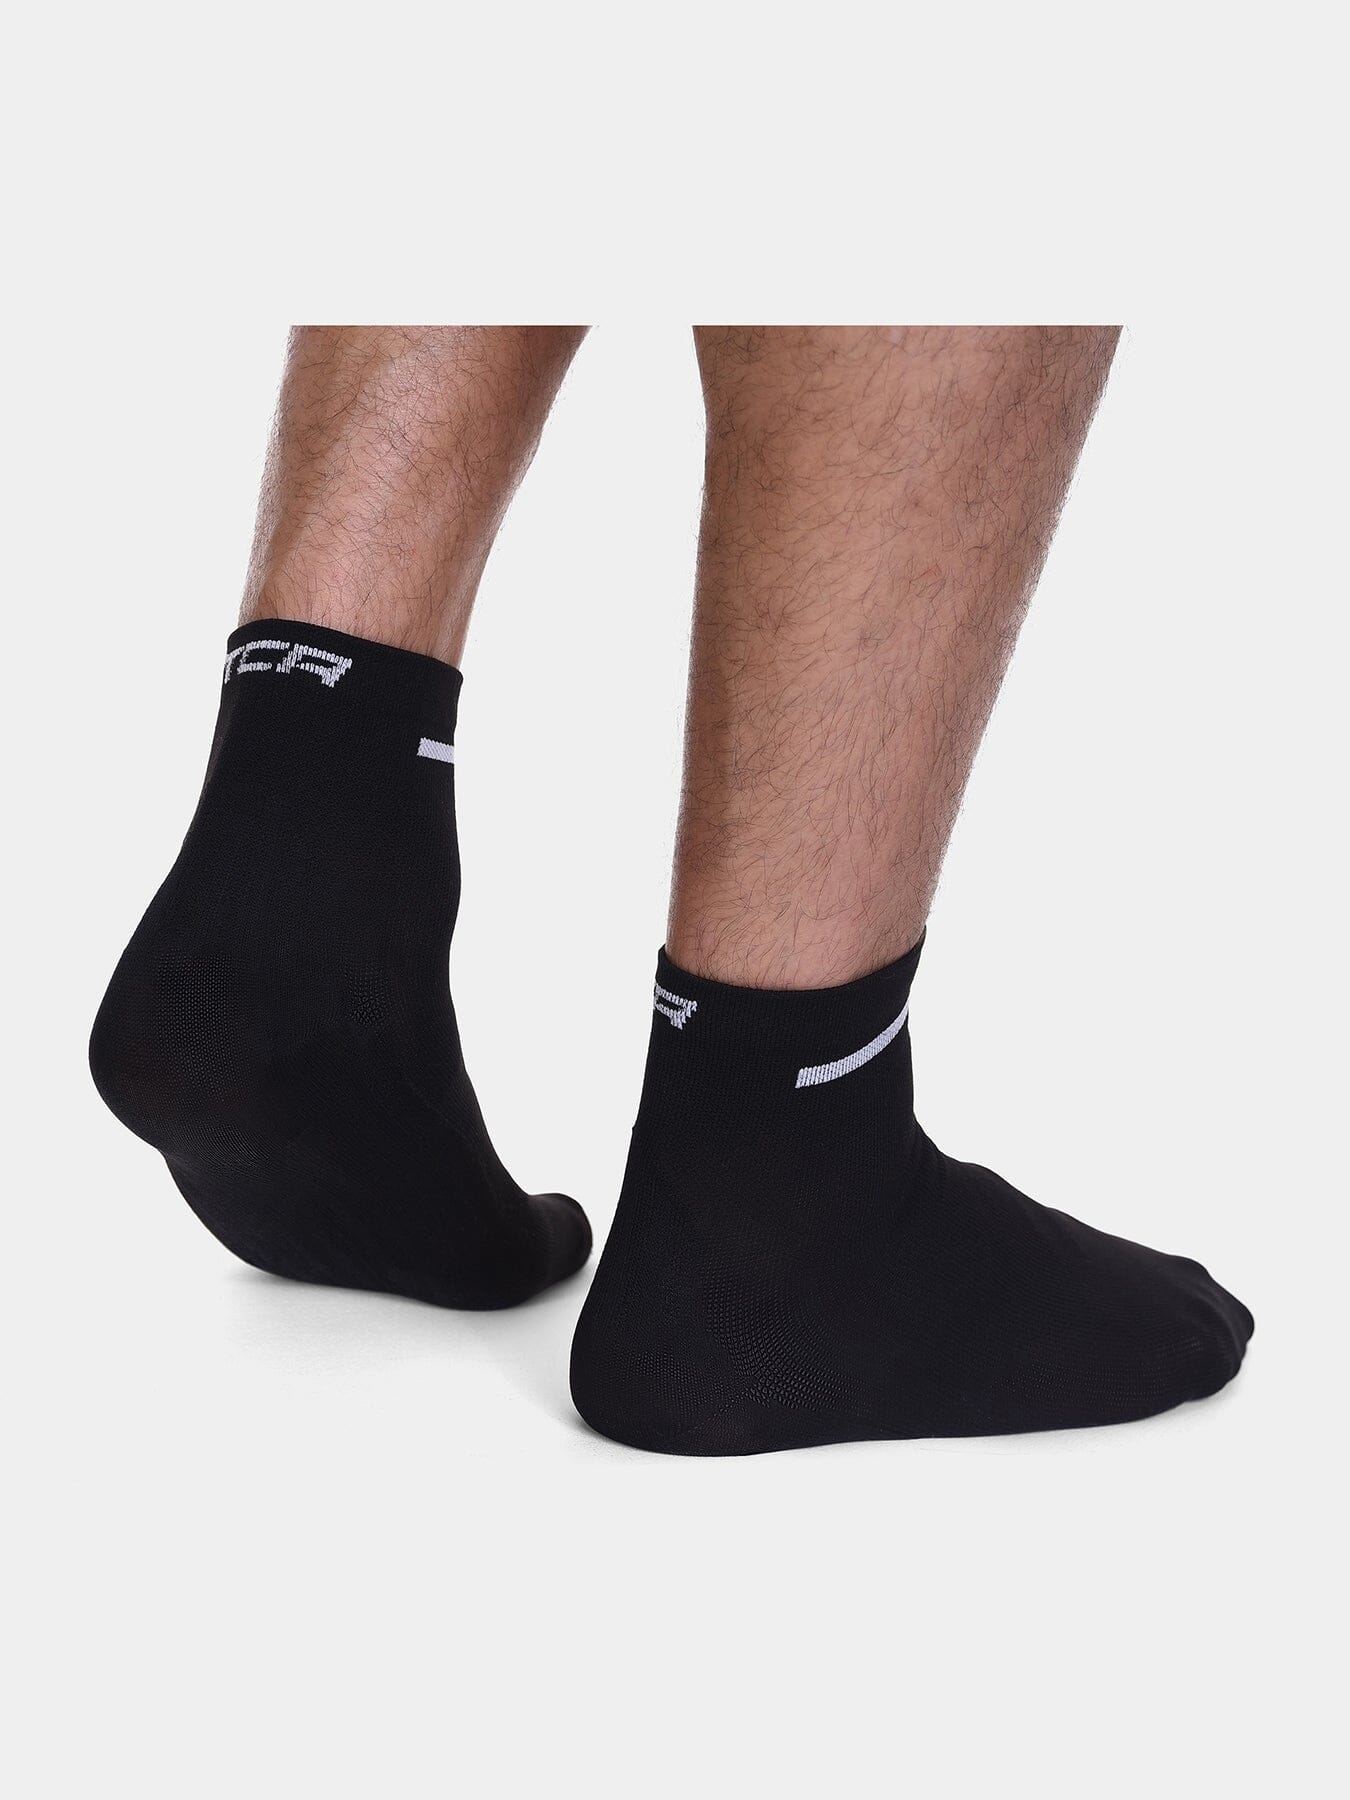 TCA Running Socks Unisex Trainer Compression socks for Men & Women